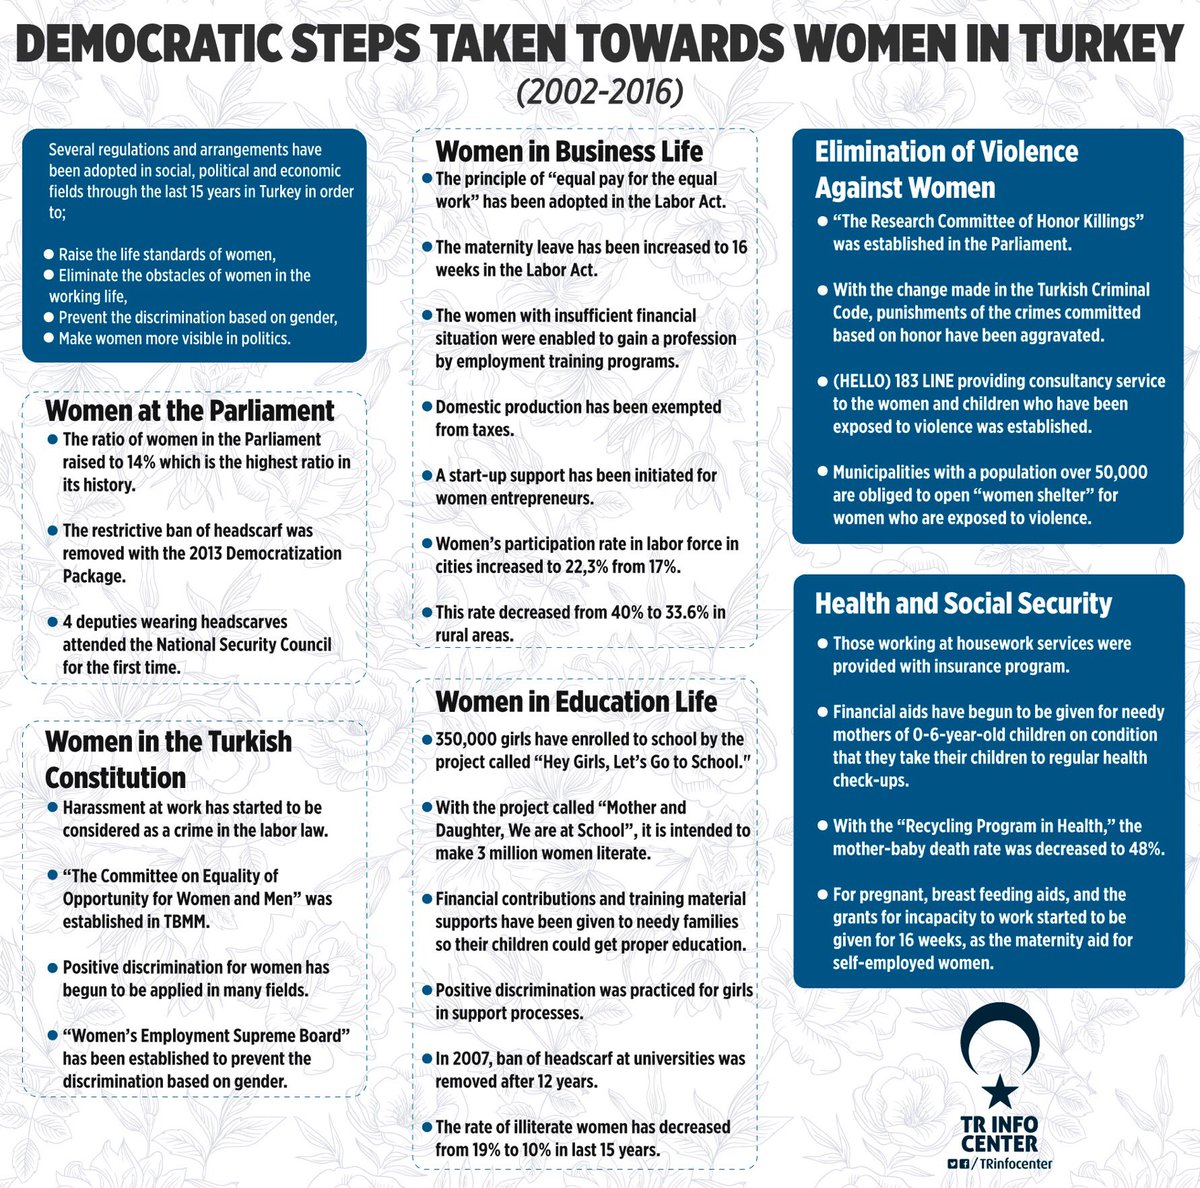 Democratic Steps Taken for Women in Turkey (2002-2016)